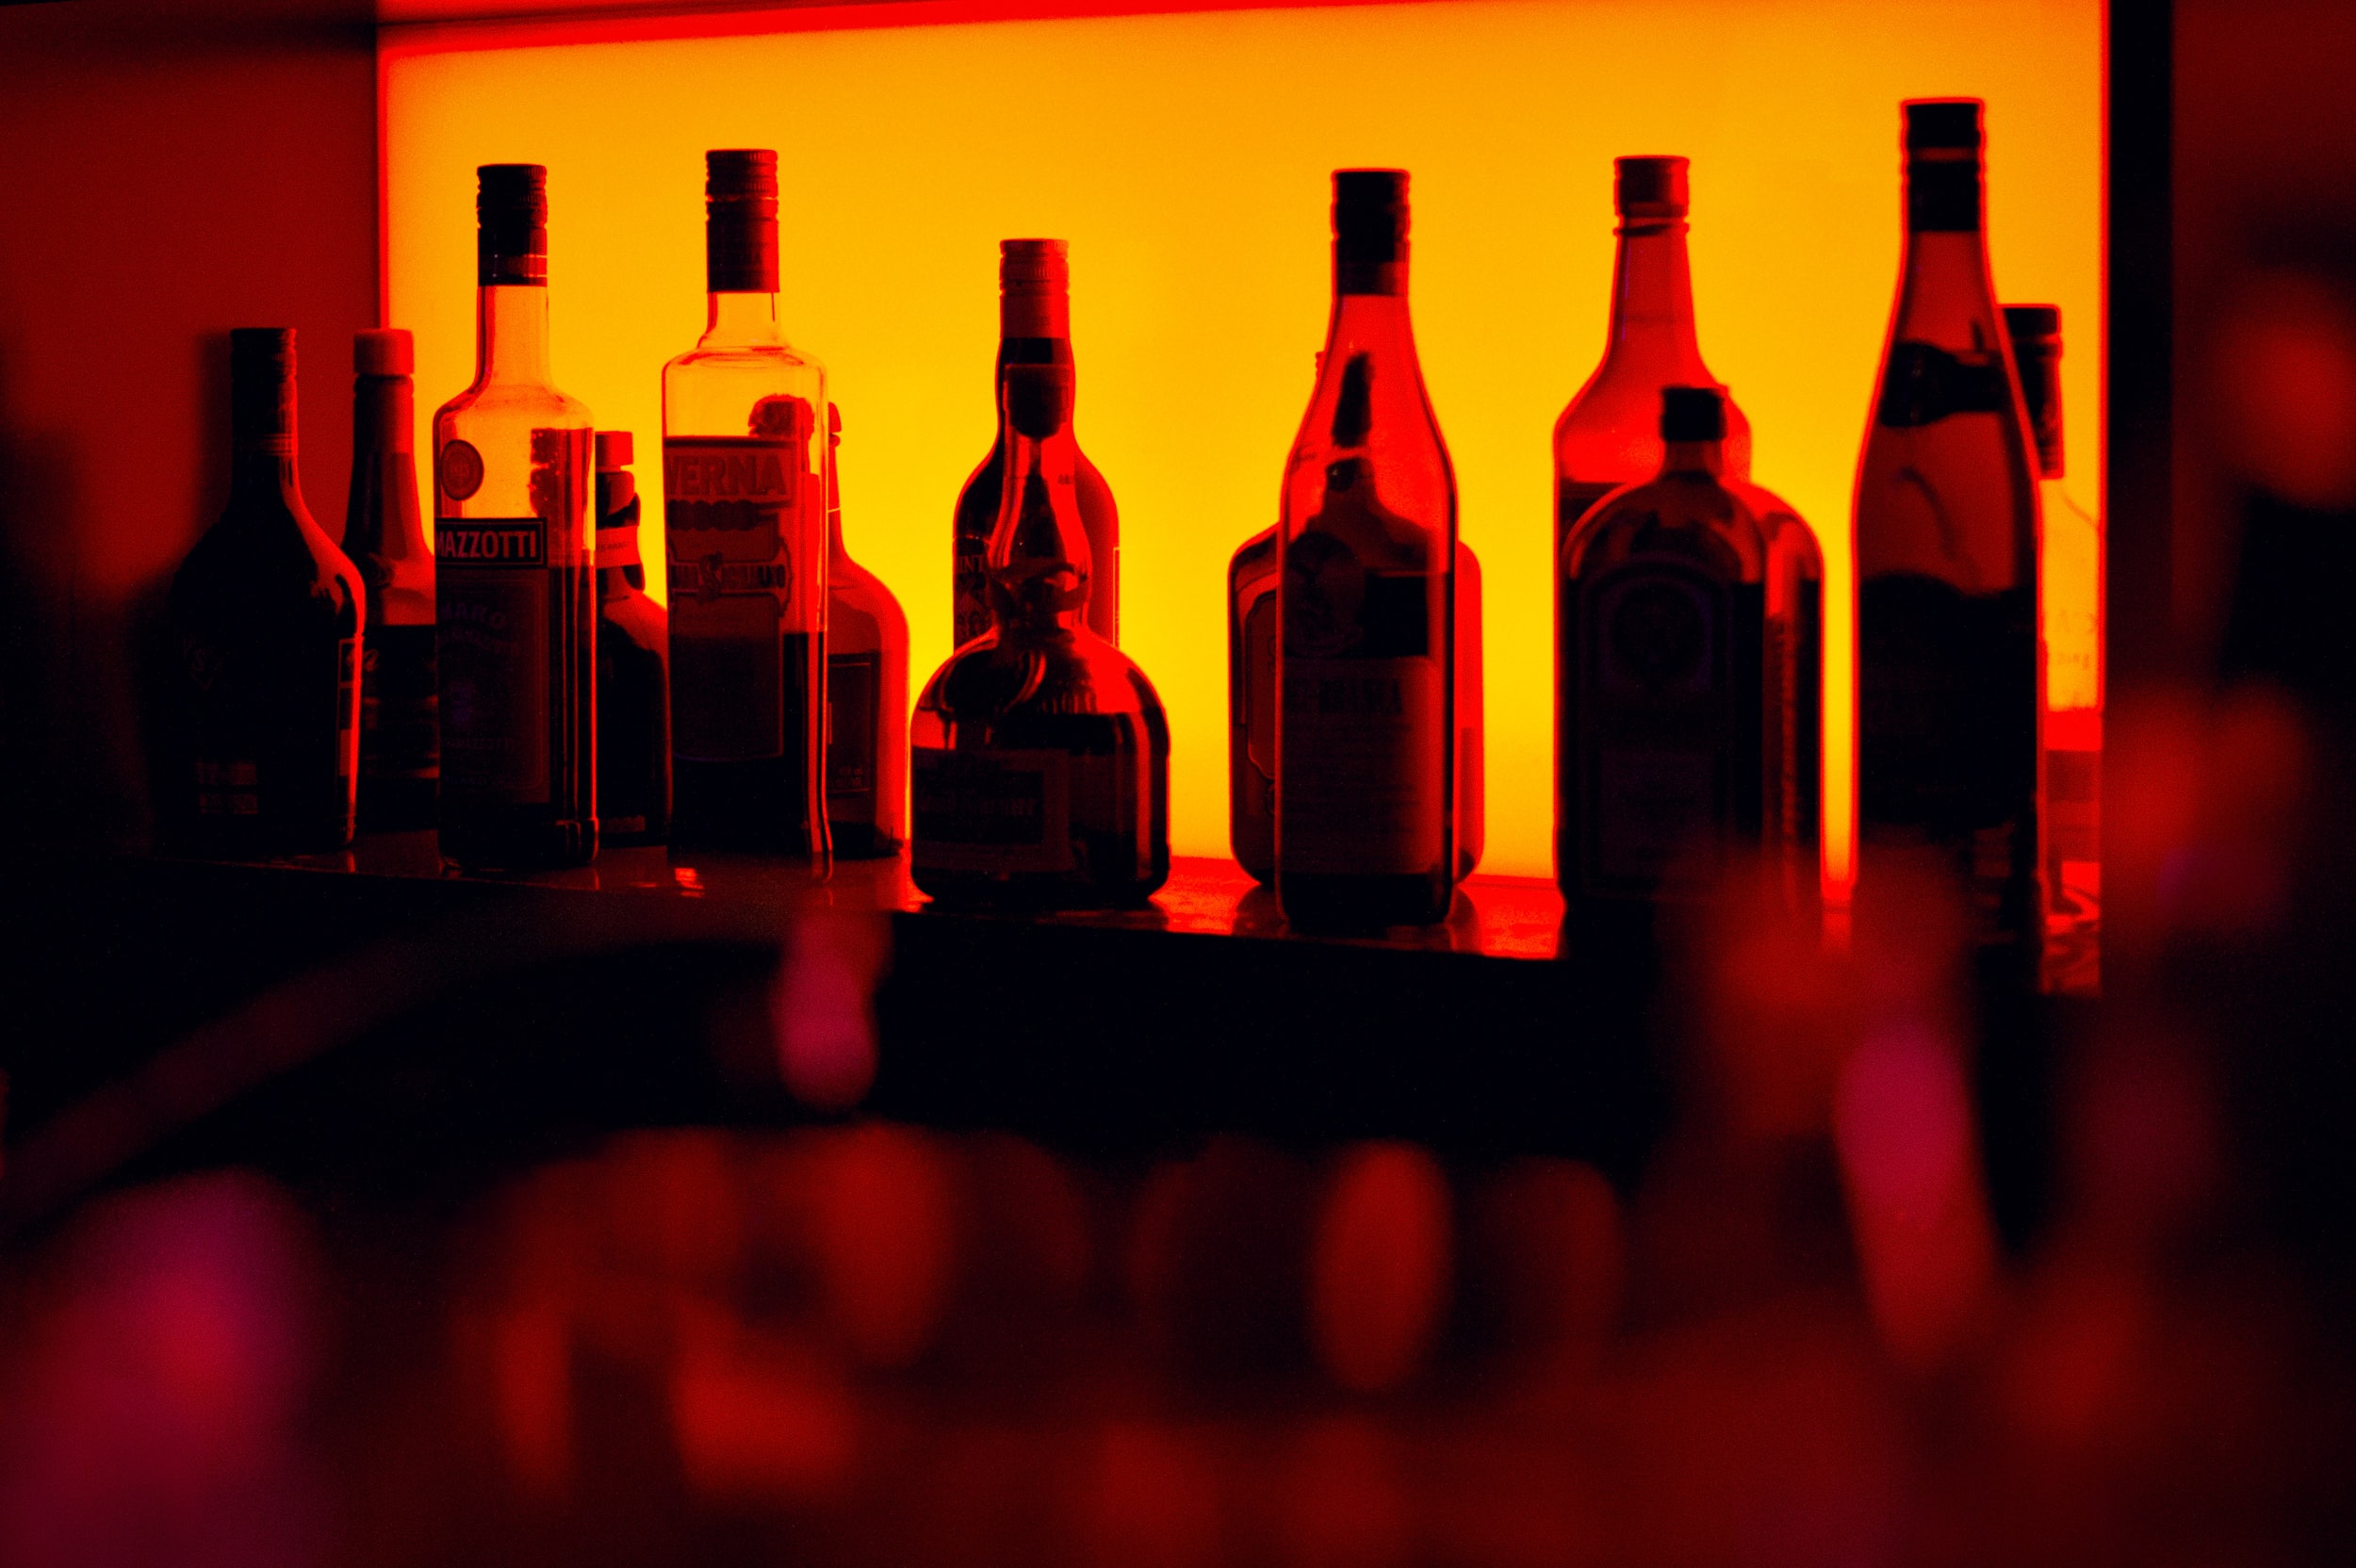 Κατάρρευση των πωλήσεων στο χονδρικό εμπόριο αλκοολούχων ποτών έφεραν τα lockdown το 2020